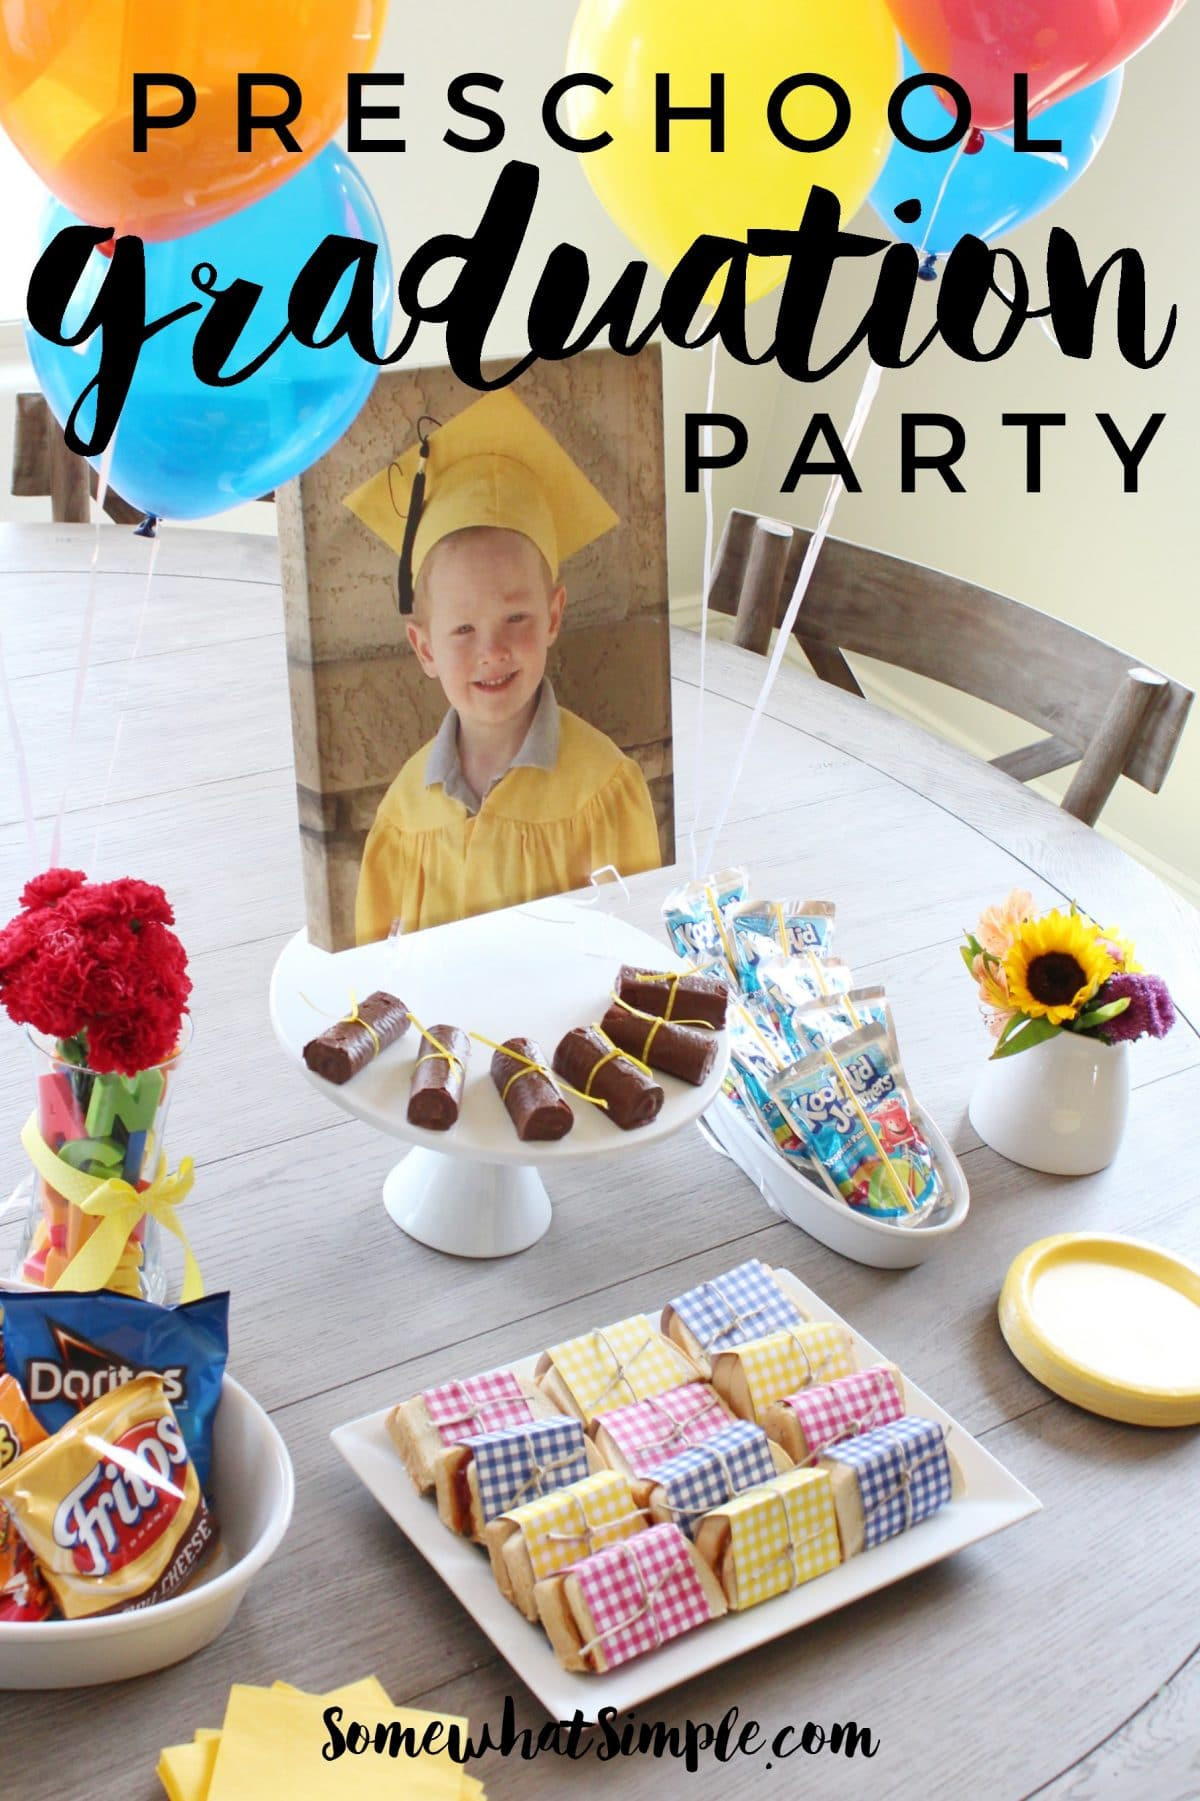 Kindergarden Graduation Party Ideas
 Preschool Graduation Party Somewhat Simple